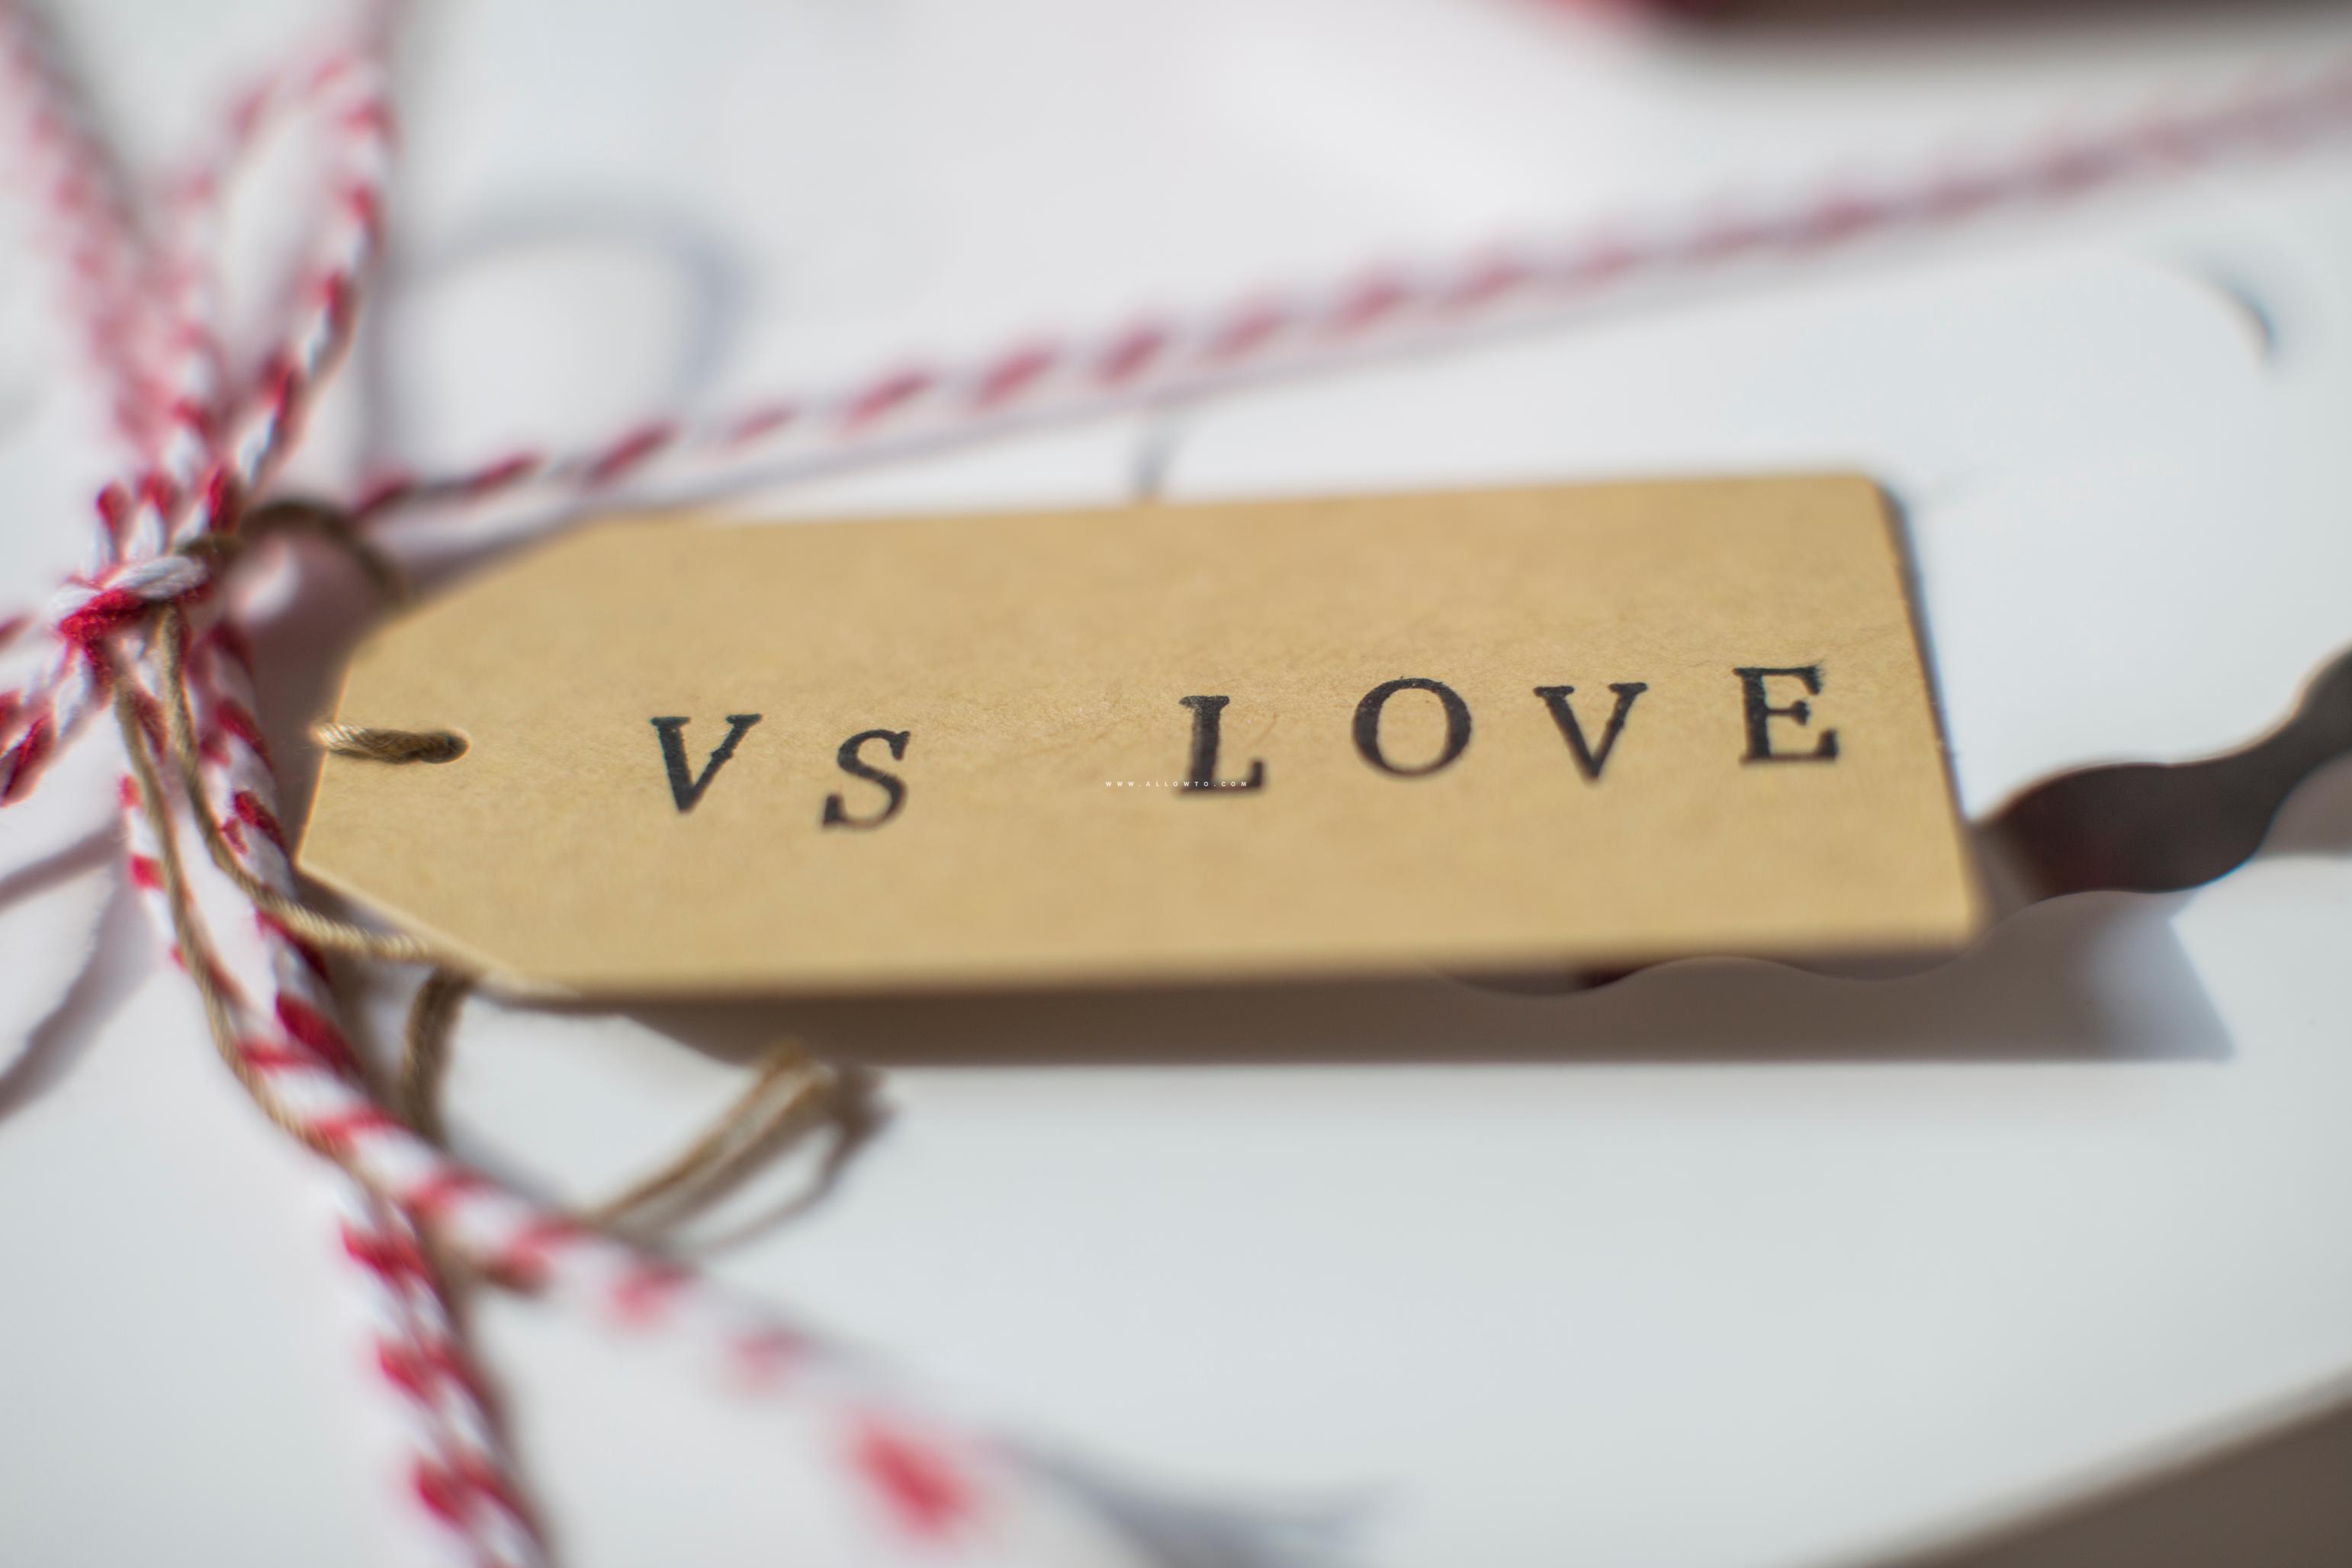 [THUMBNAIL] vs love